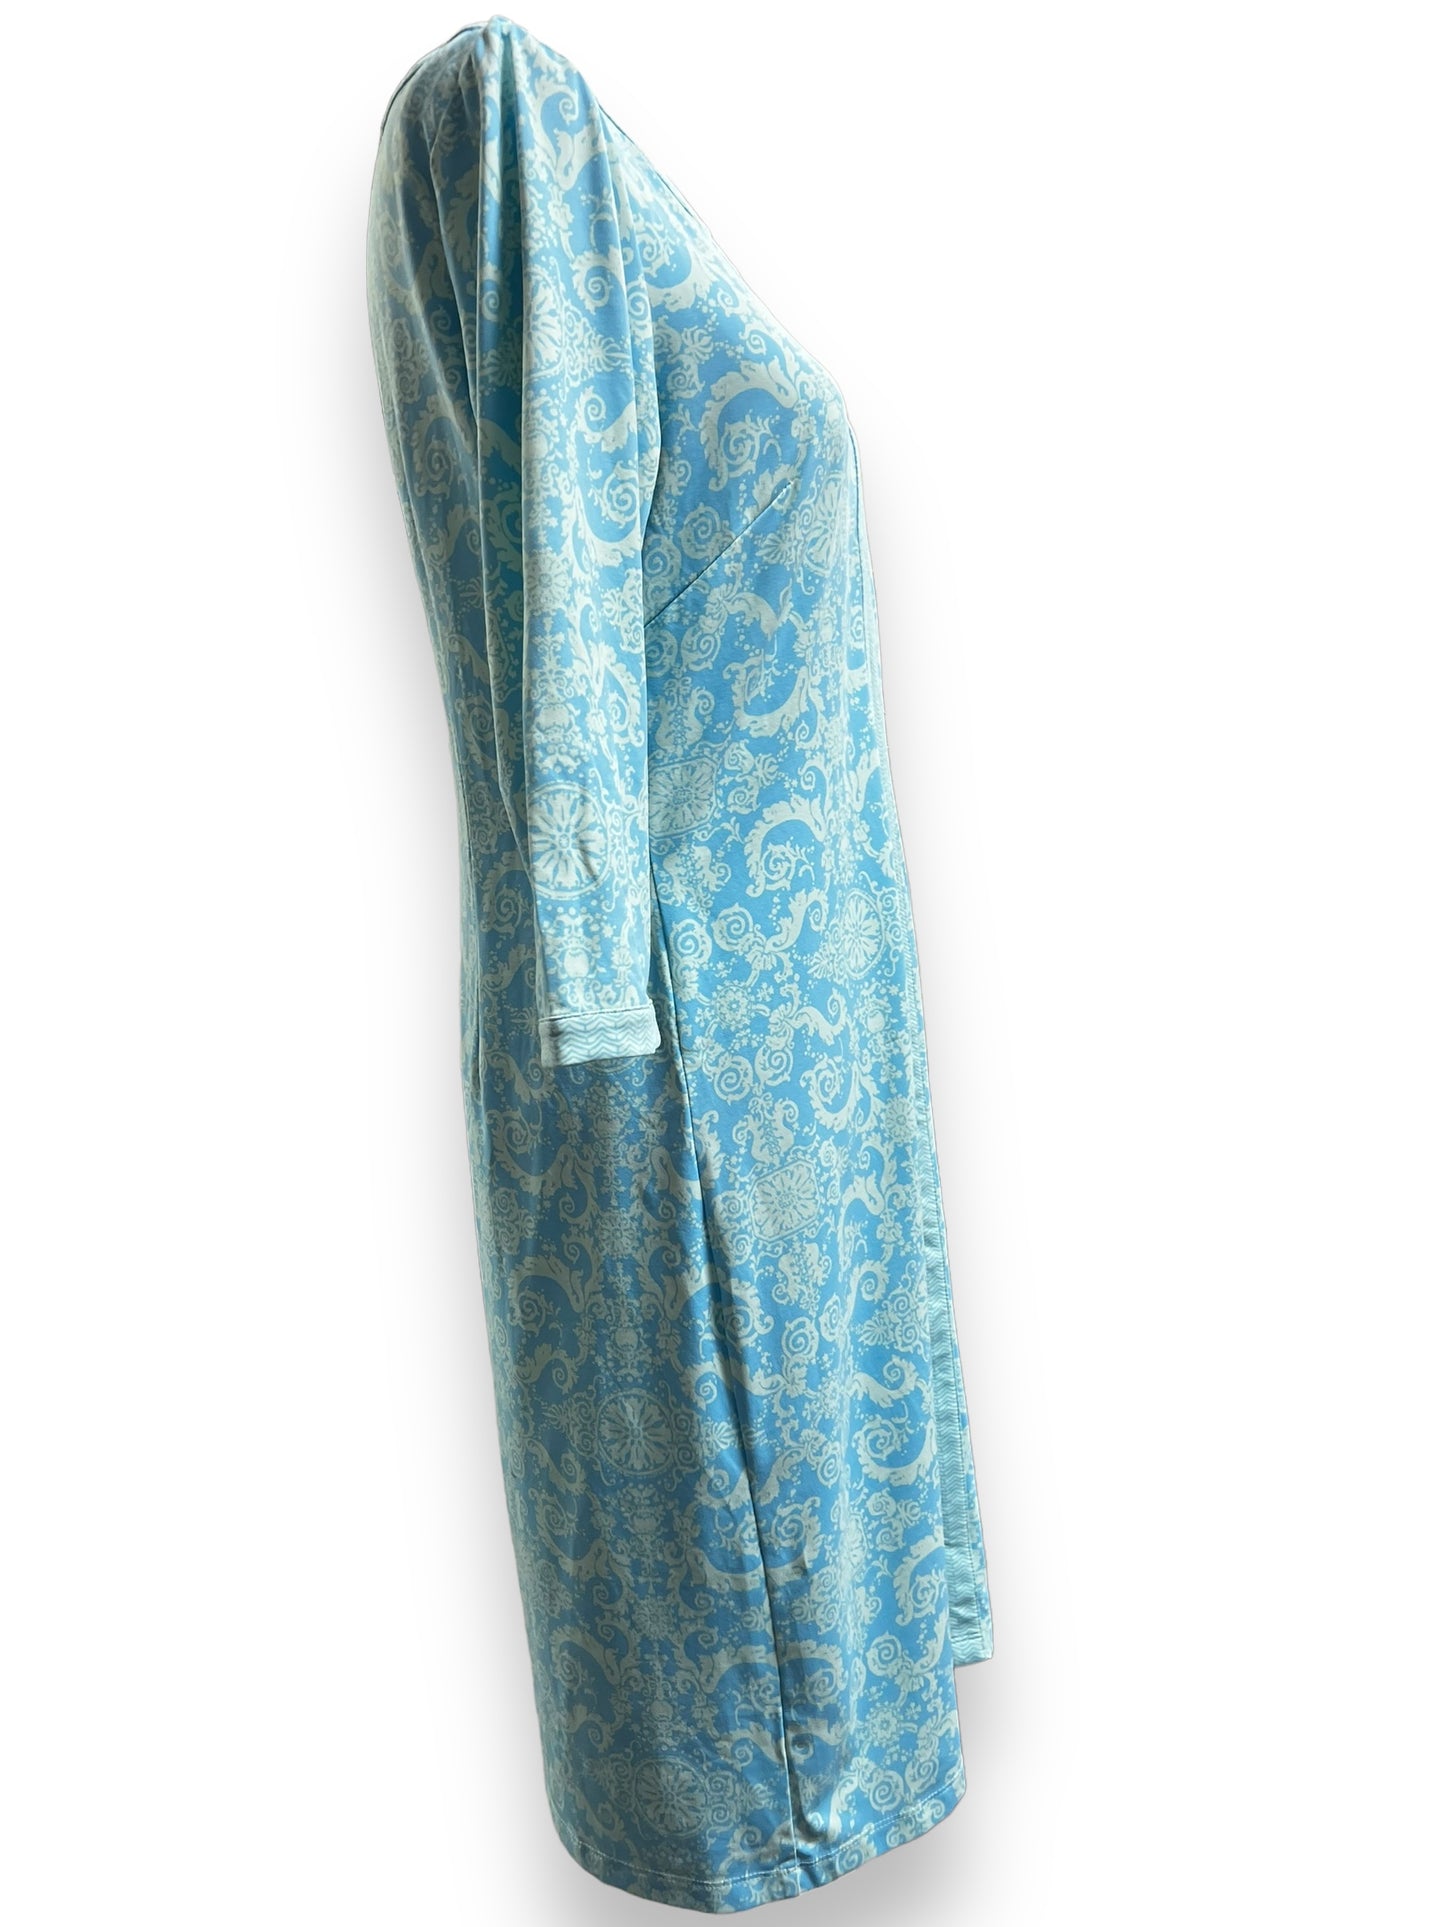 J. Mclaughlin Women's Light Blue Floral Dress. Size Medium